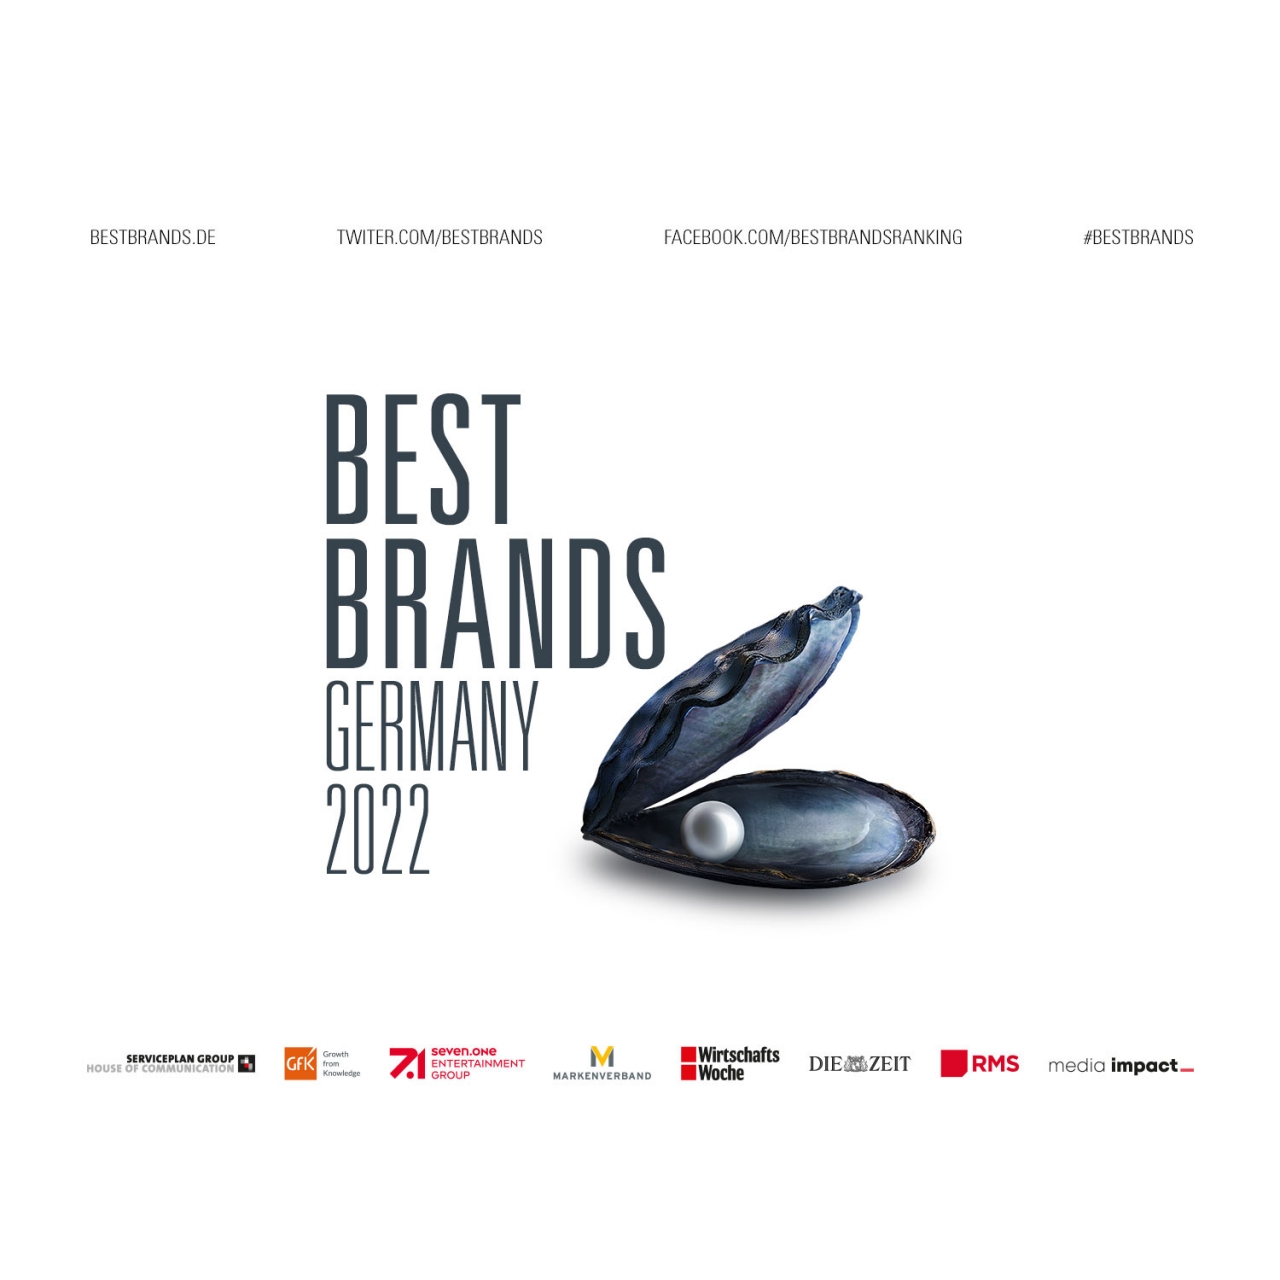 Best Brands 2022